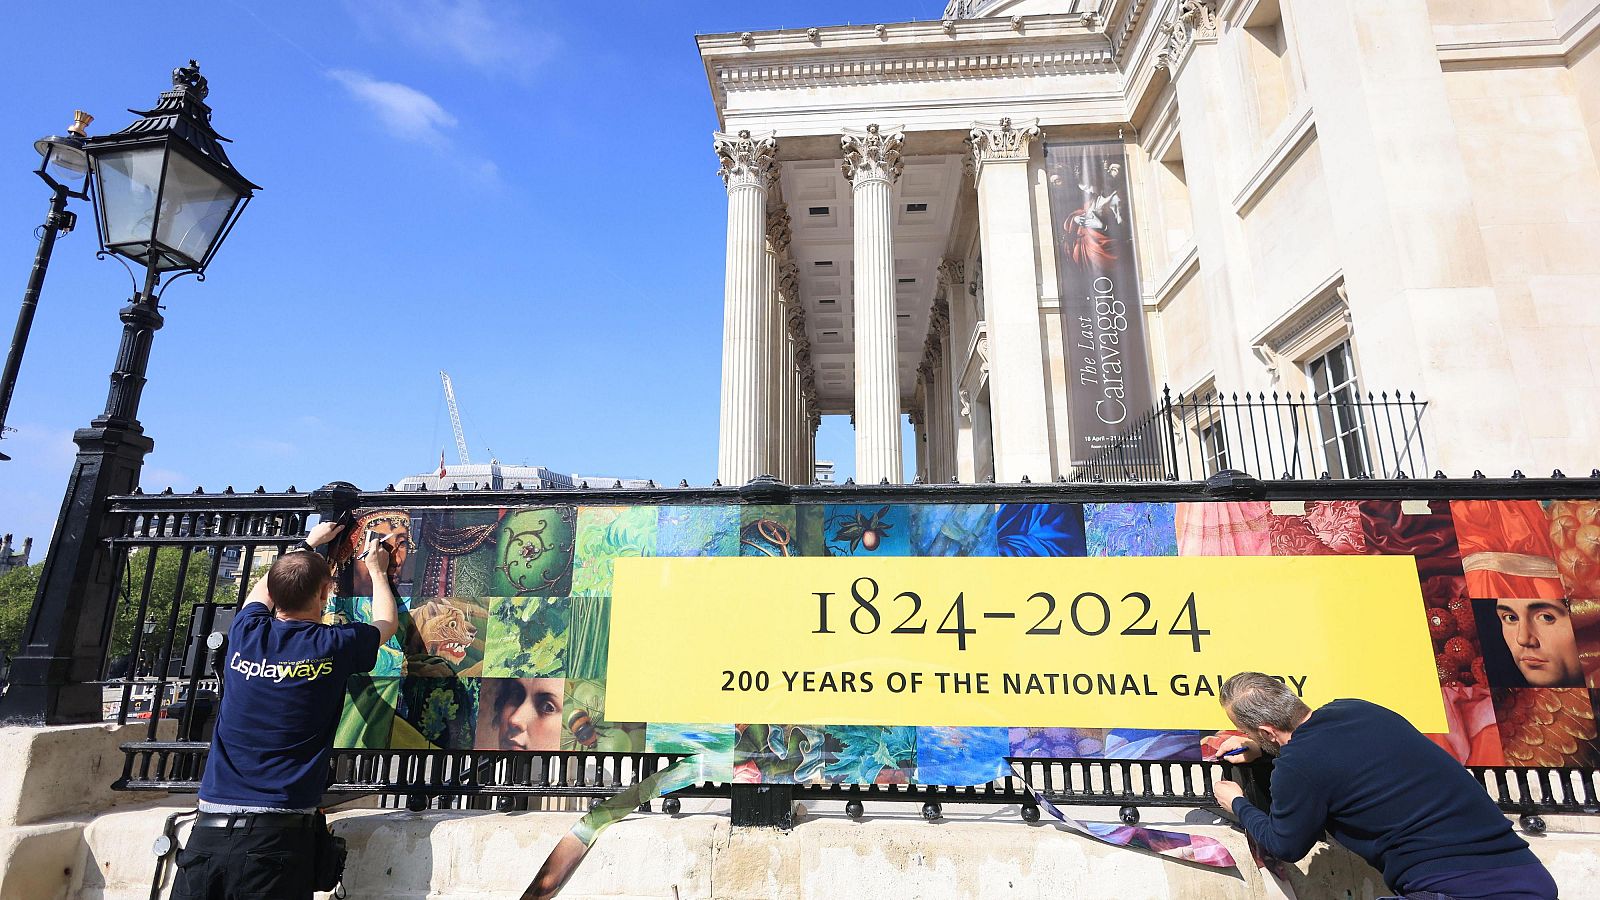 La National Gallery de Londres cumple 200 años